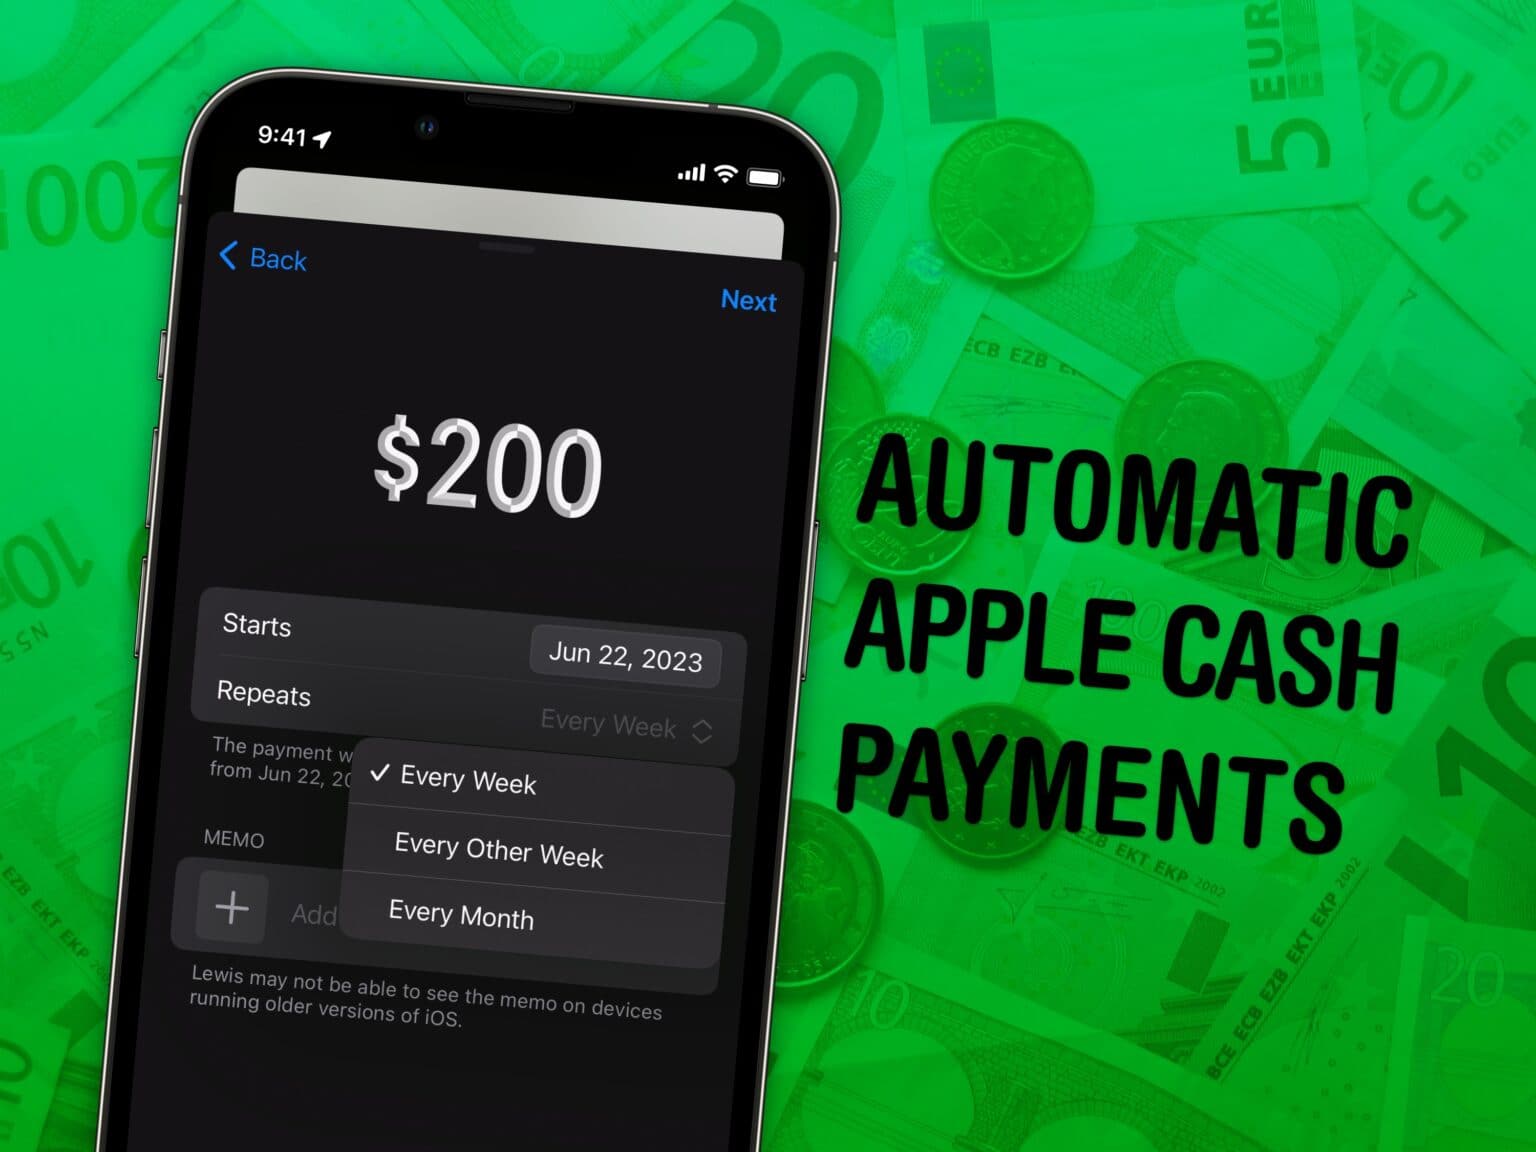 Automatic Apple Cash Payments